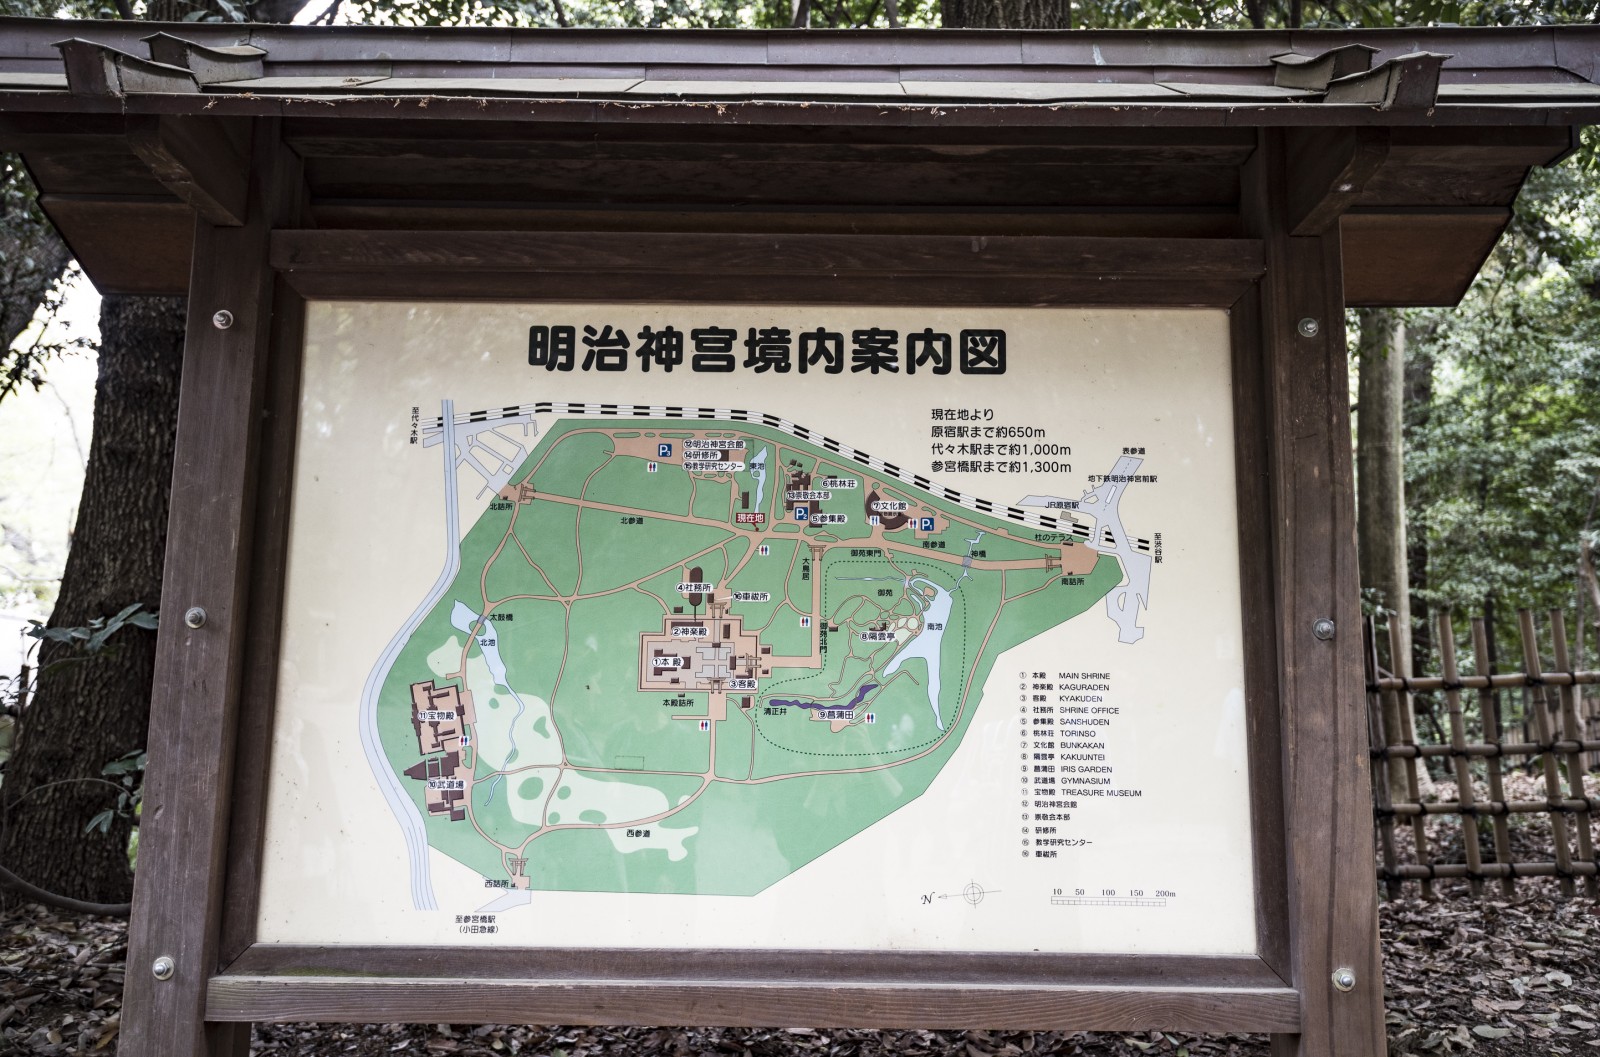 Mapa do Parque Yoyogi